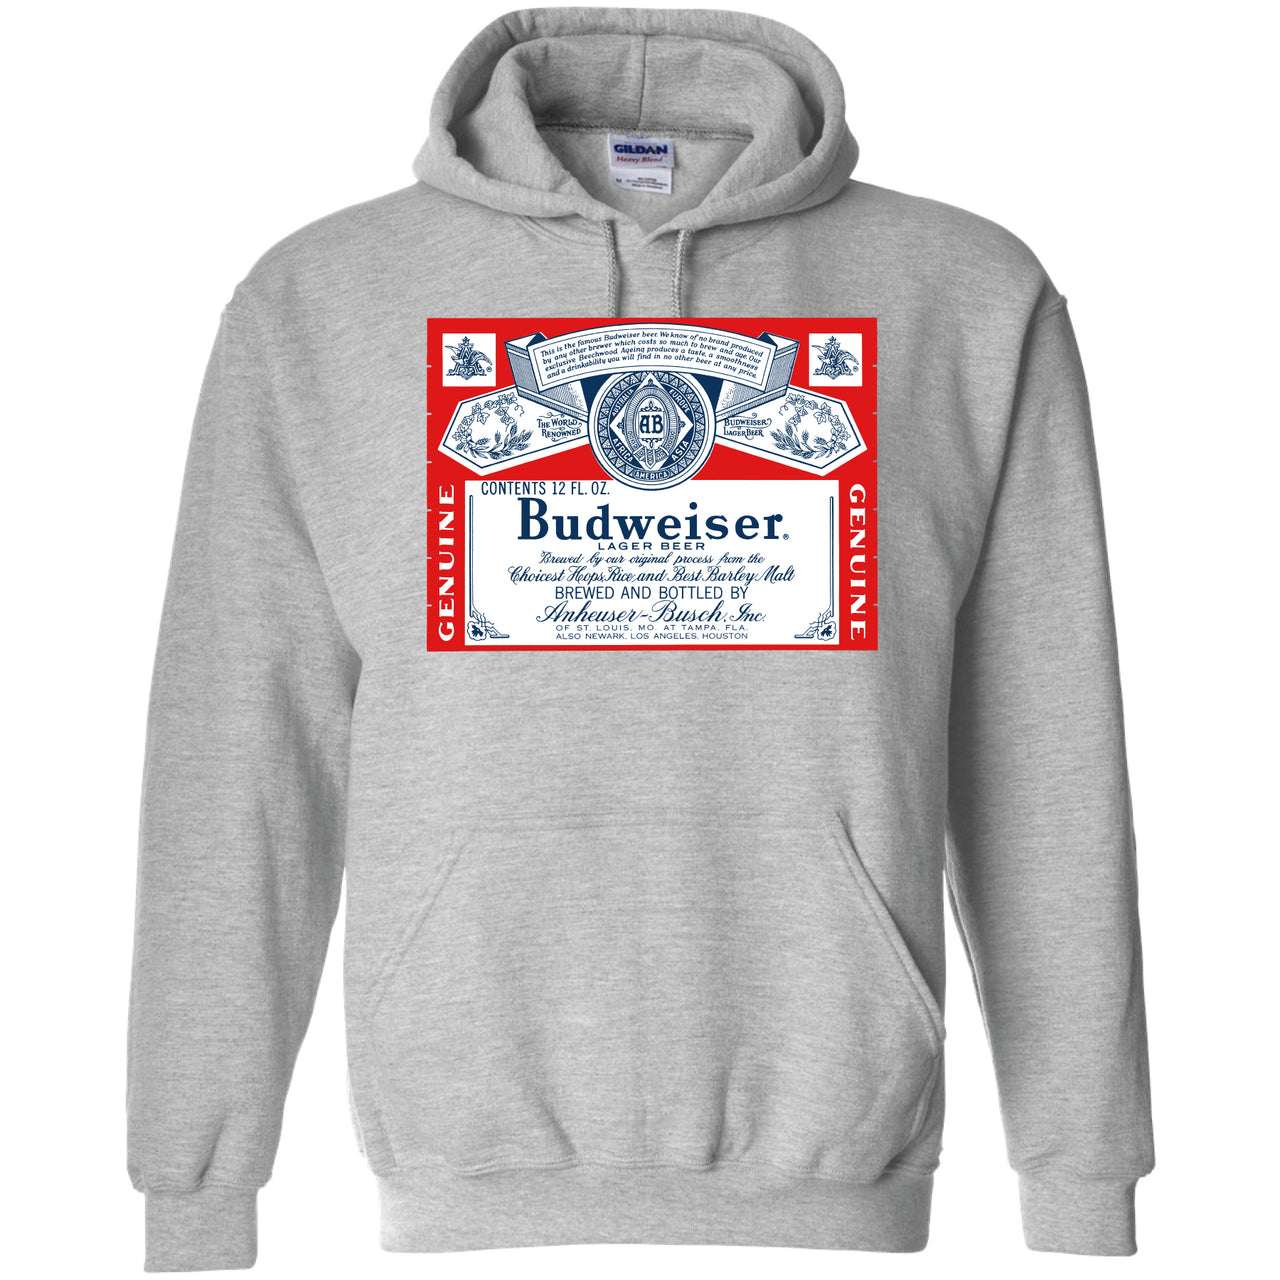 Budweiser - Vintage 1966 Label Hooded Sweatshirt